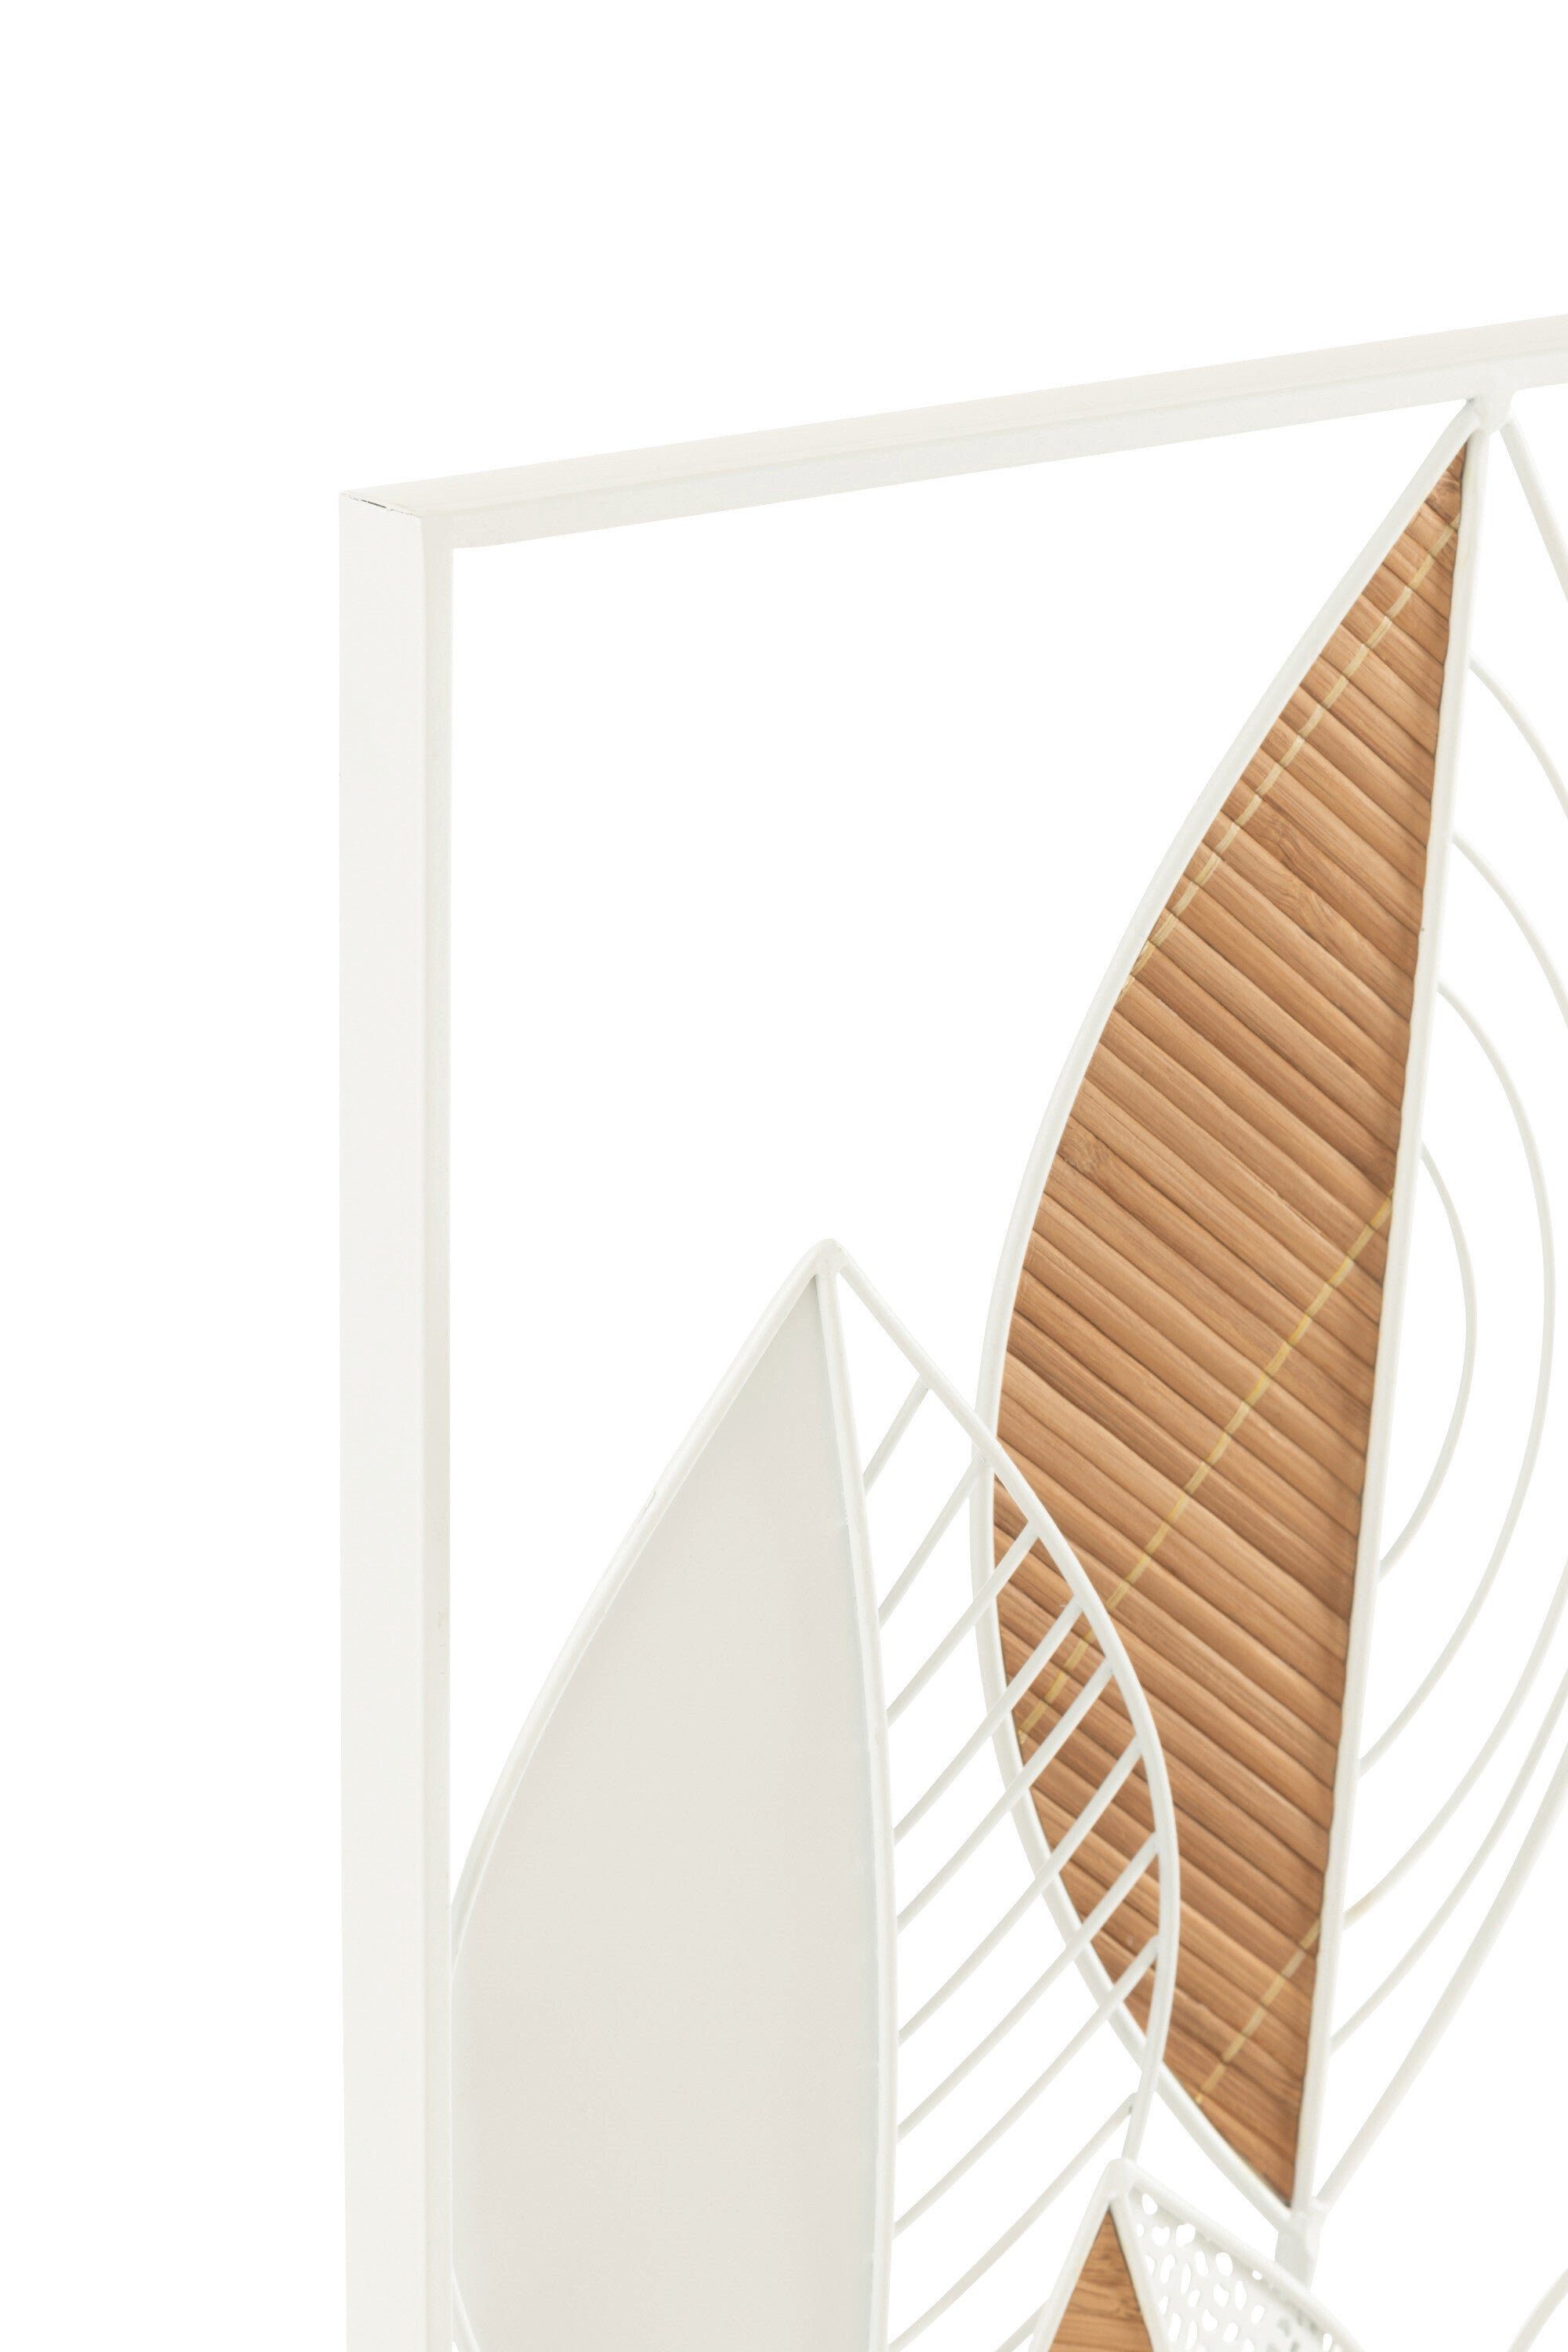 Wanddeko in Metall/Bambus Blätter Edle Weiß aus MF Dekoobjekt